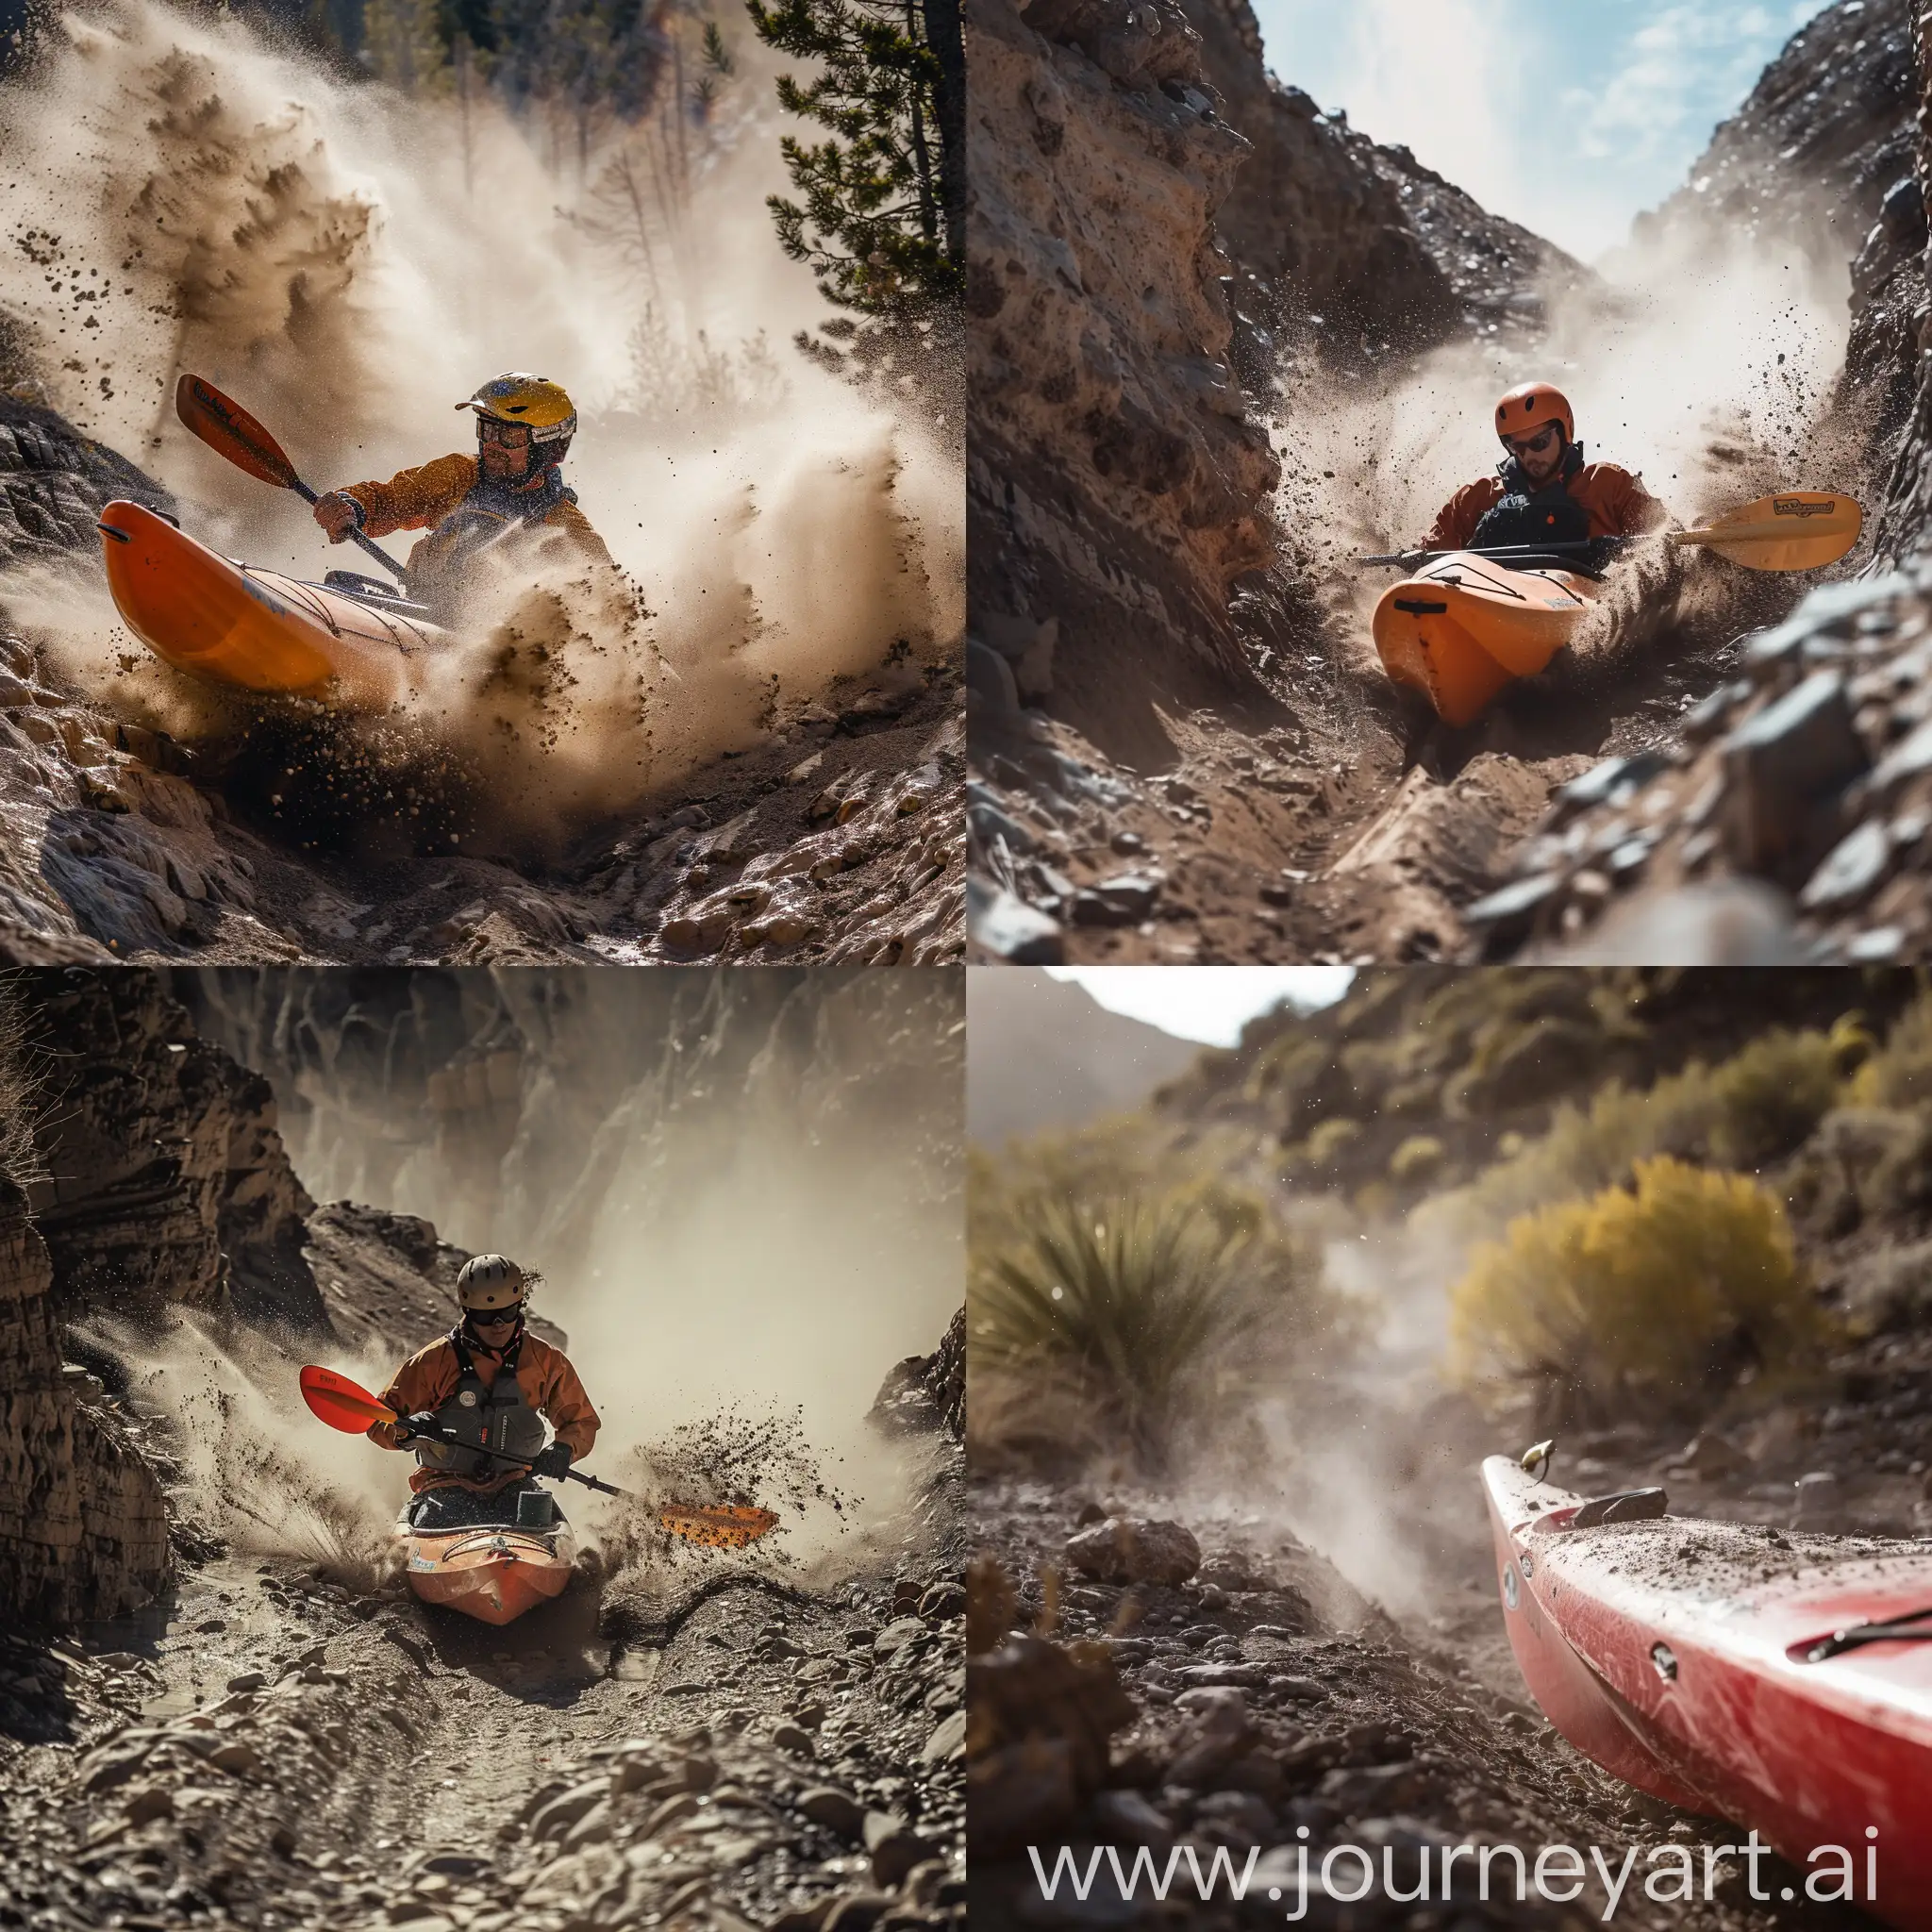 Adventurous-Kayaking-Downhill-on-Dusty-Mountain-Trail